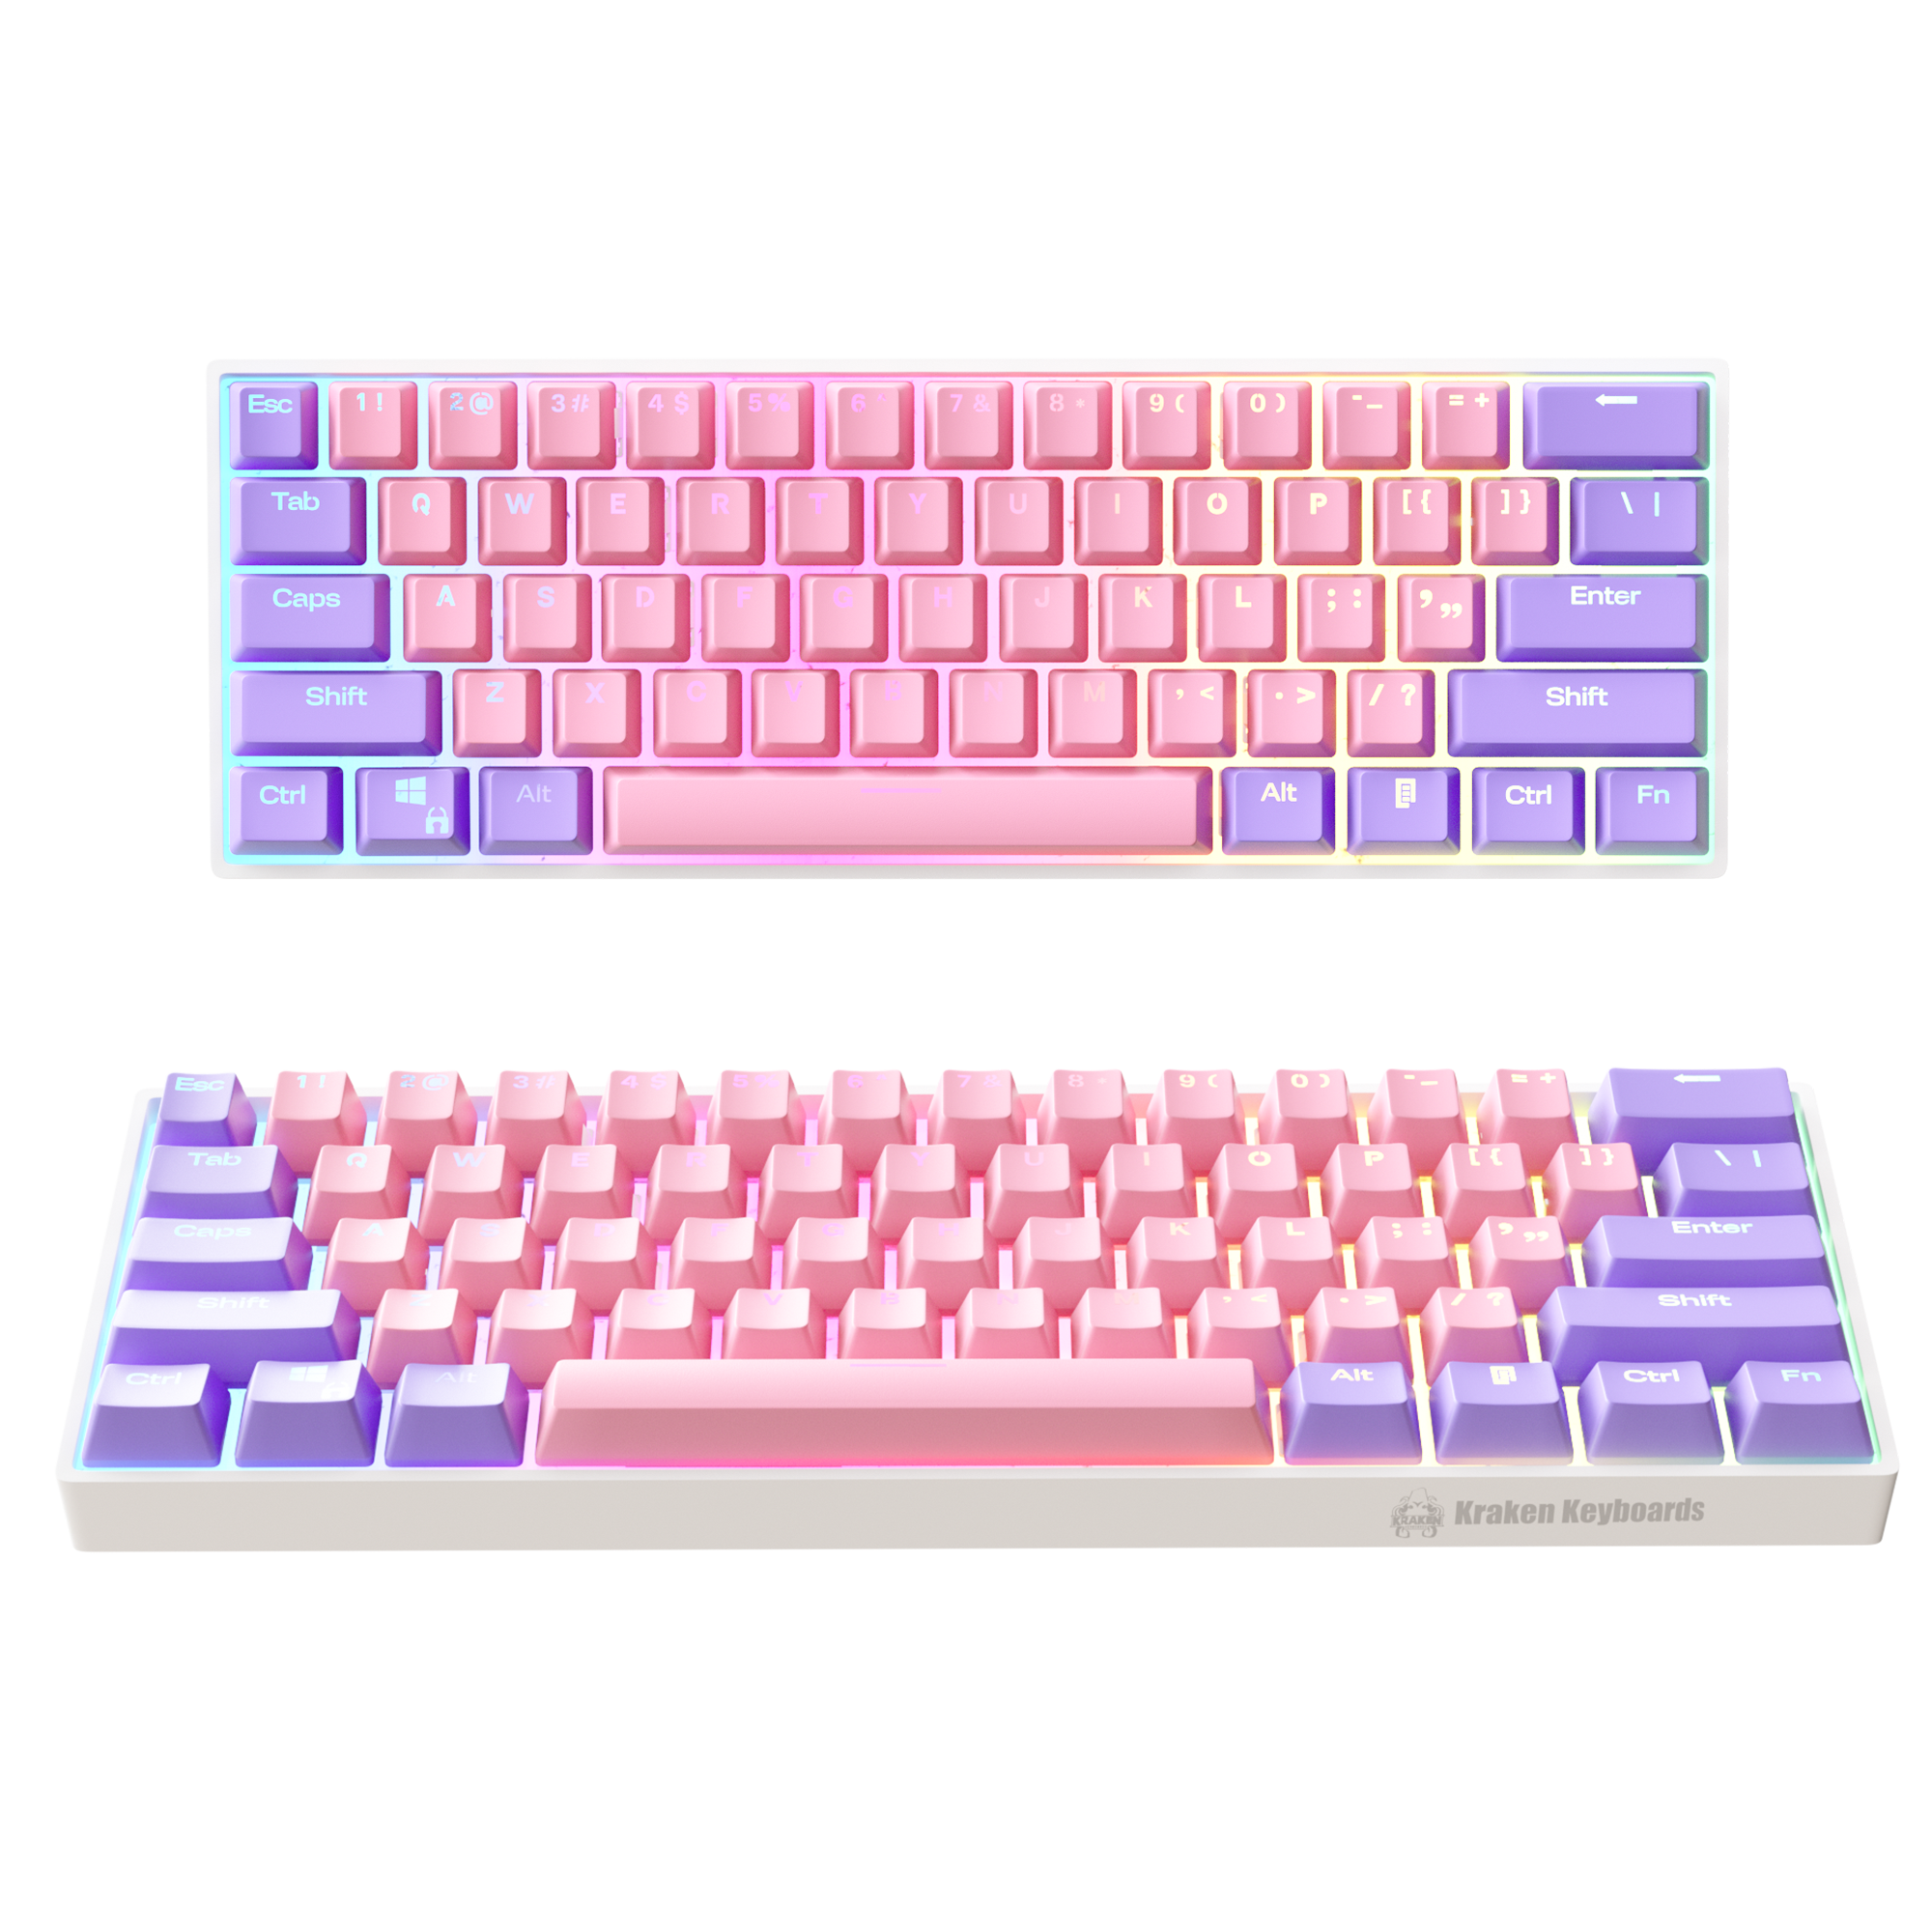  KRAKEN KEYBOARDS Sakura Edition Kraken Pro 60, White & Pink 60%  HOT SWAPPABLE Mechanical Gaming Keyboard for Gaming On PC, MAC, Xbox and  Playstation (Sakura